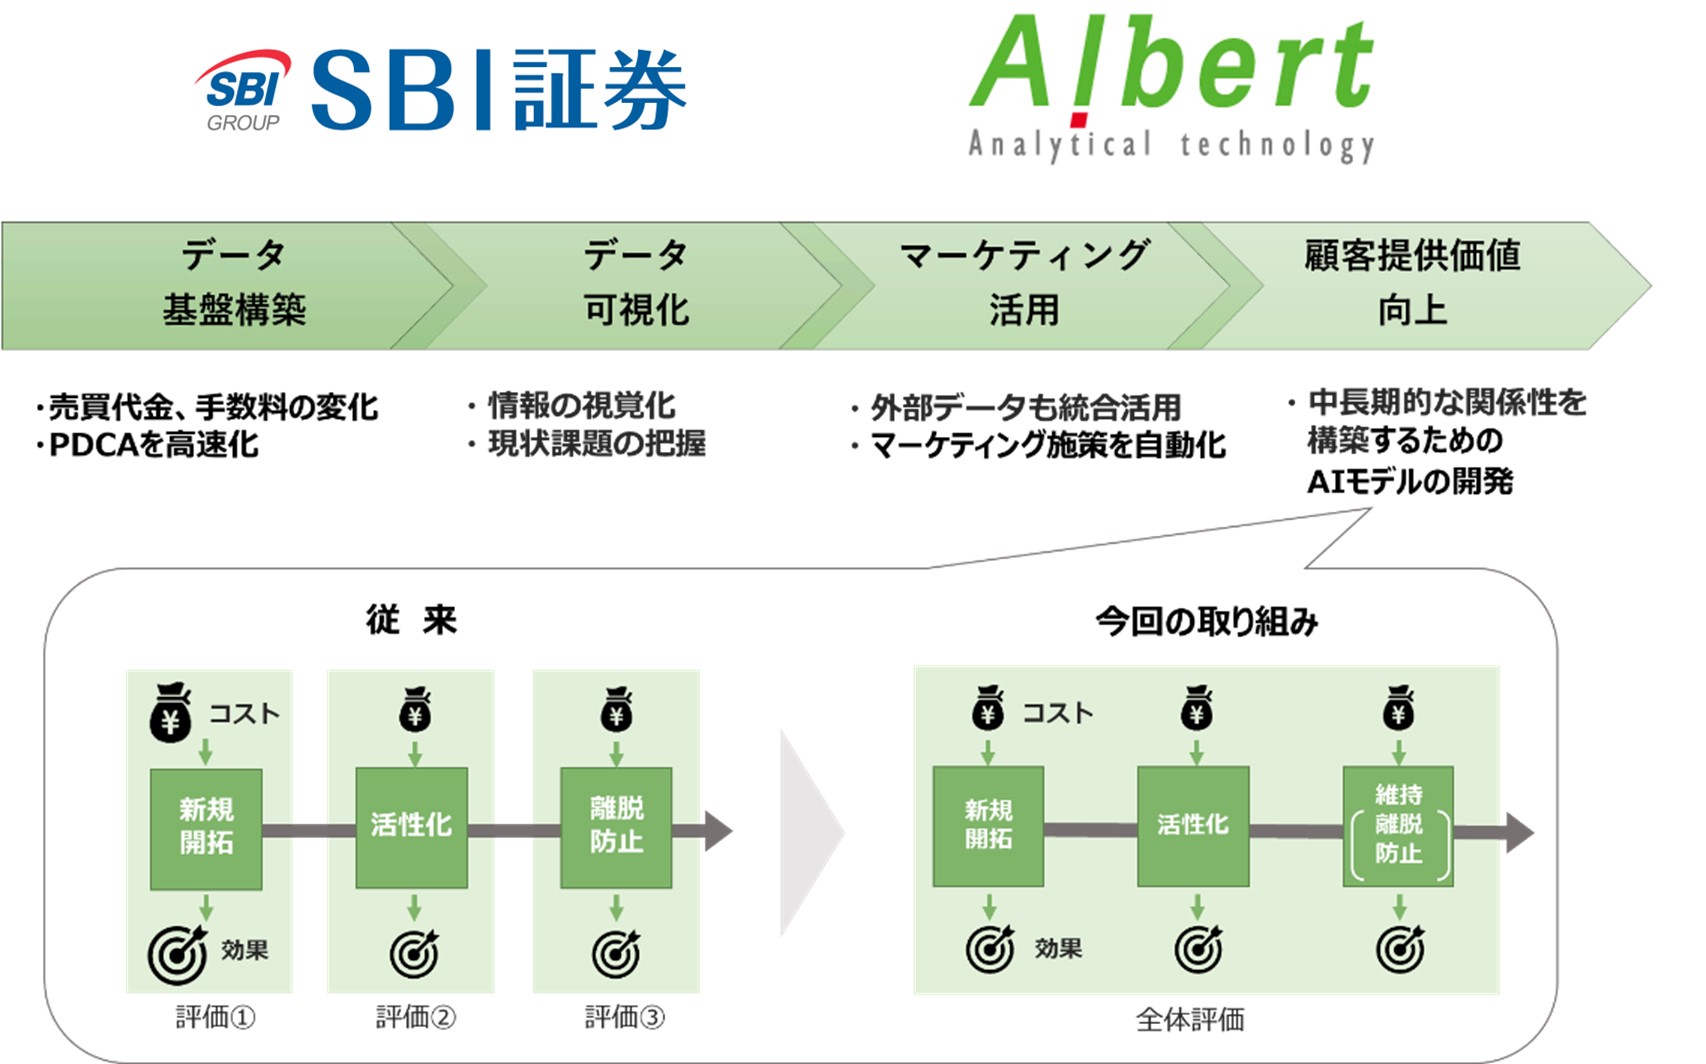 ALBERT、SBI証券と協業しマーケティング最適化AIモデルの開発を開始